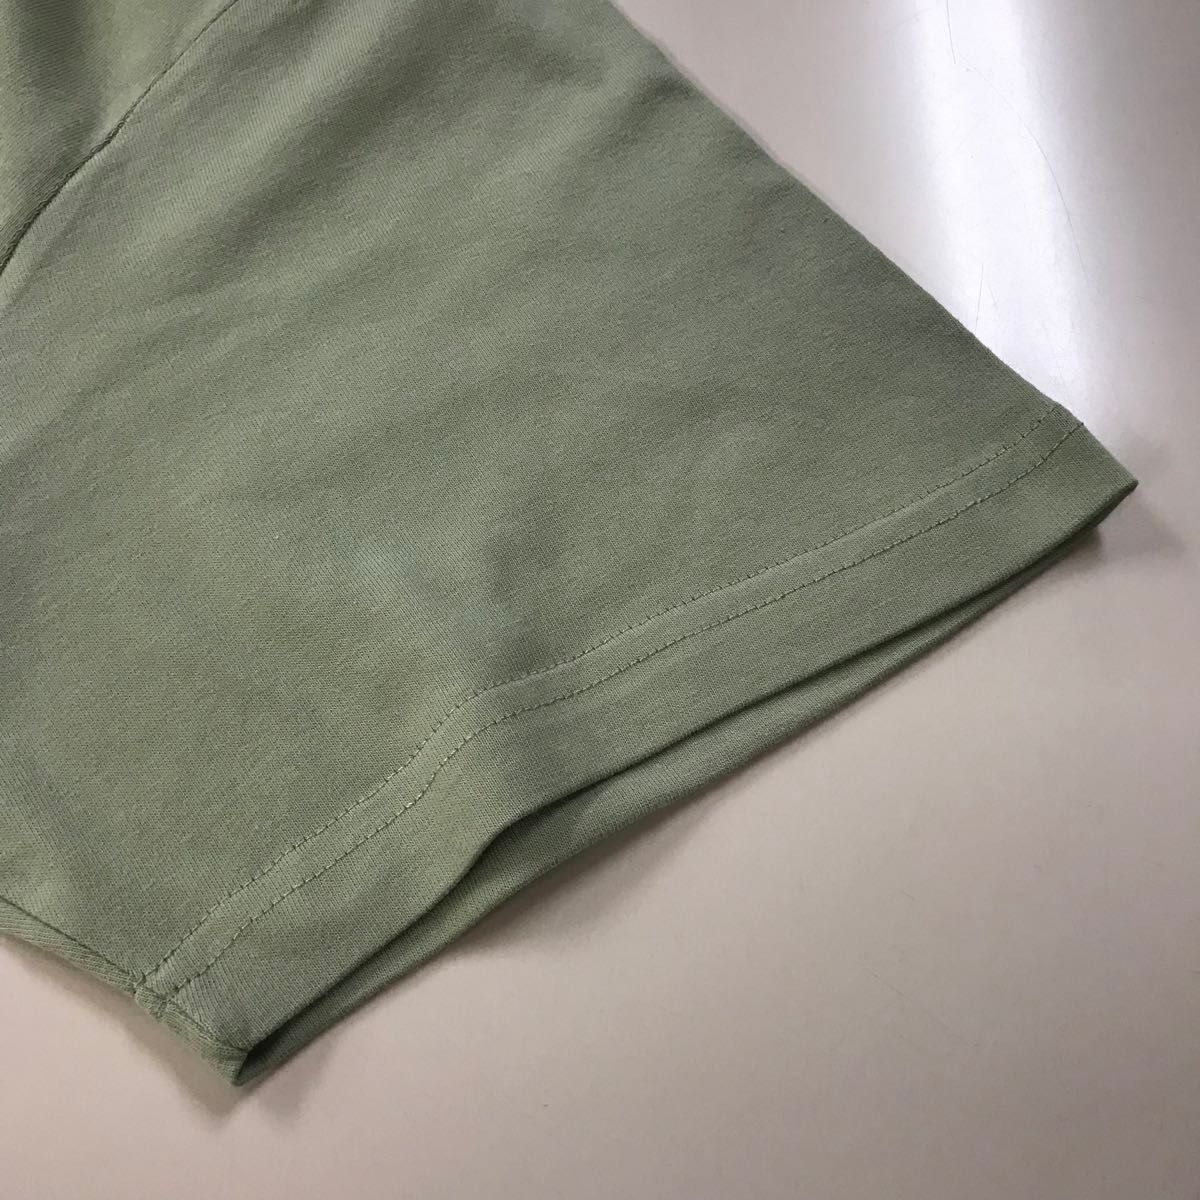 Tシャツ 半袖 5.6オンス ハイクオリティー【5001-01】XL セージグリーン 綿100%